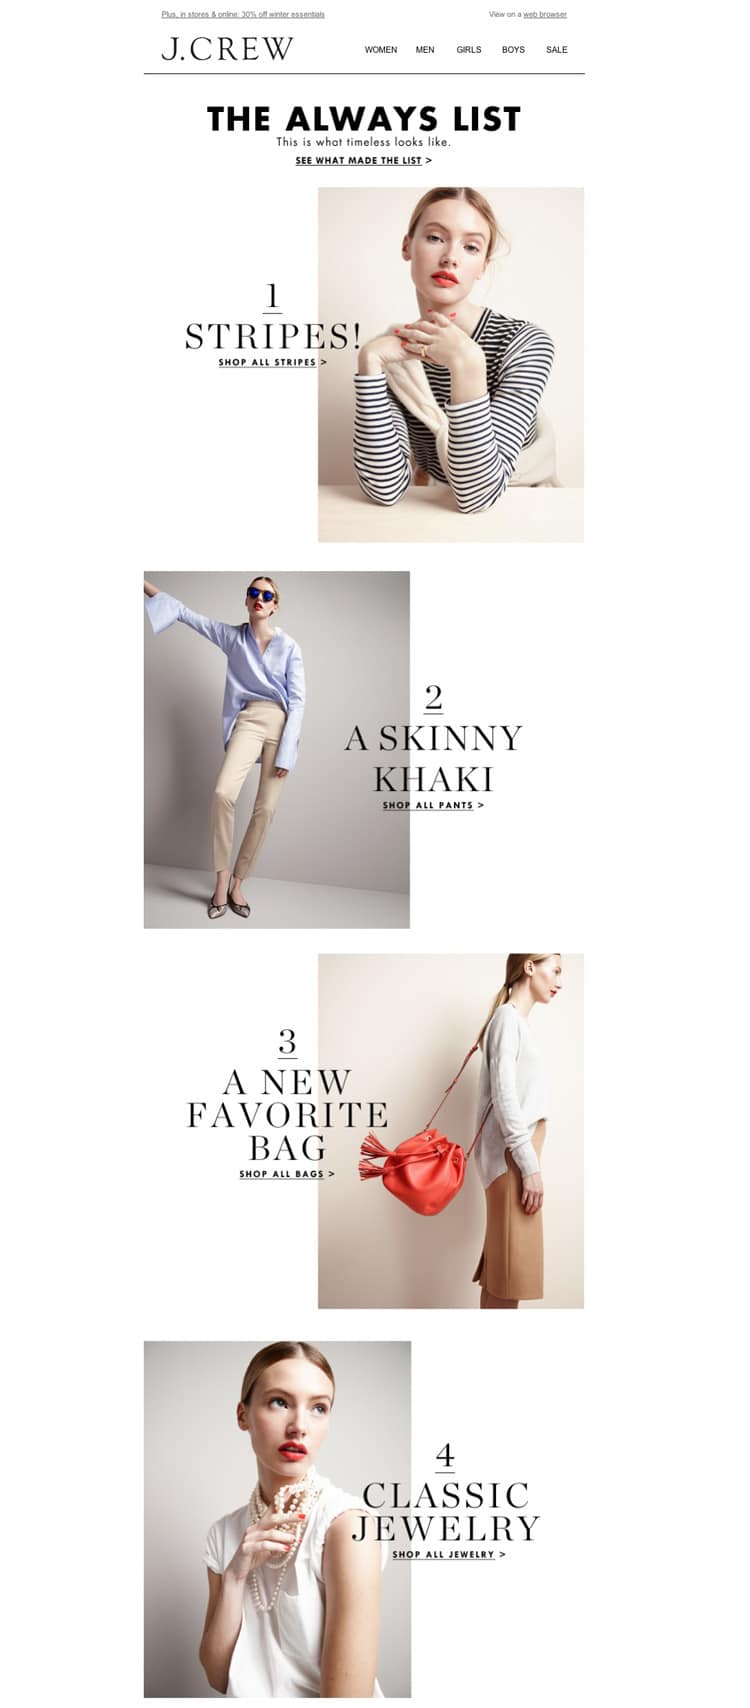 e-newletter email newsletter marketing design layout inspiration j crew j.crew clothing simple minimal stylish fashion